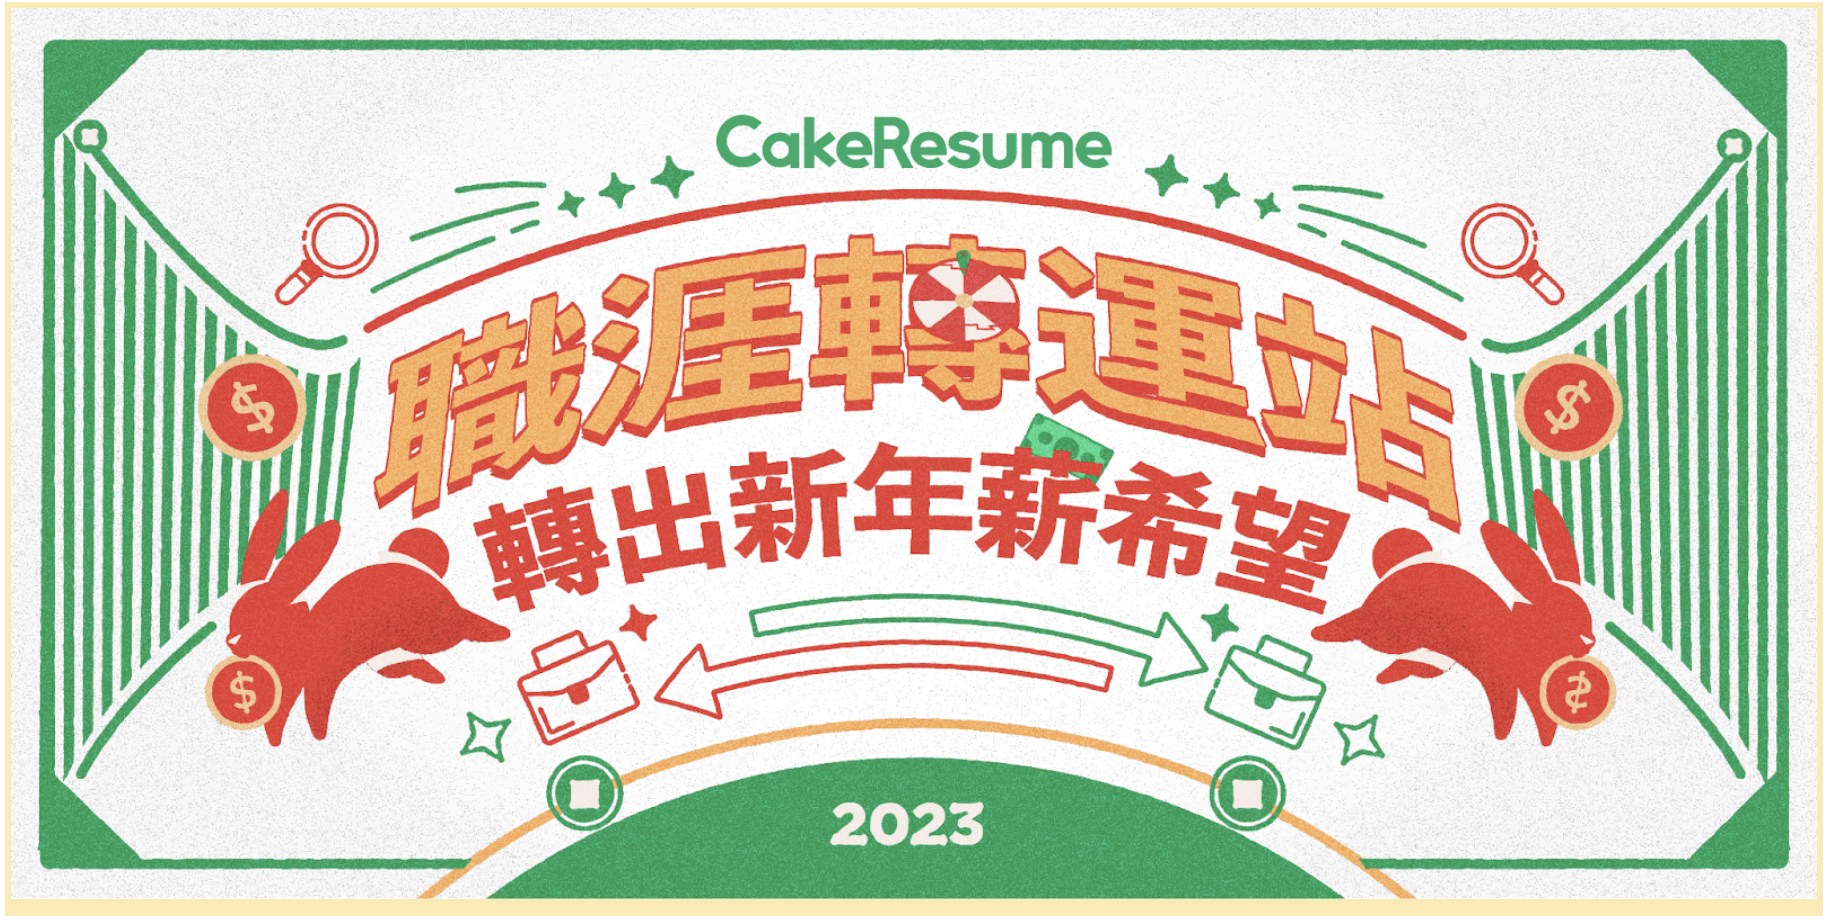 【會員福利】CakeResume 職涯轉運站課程封面